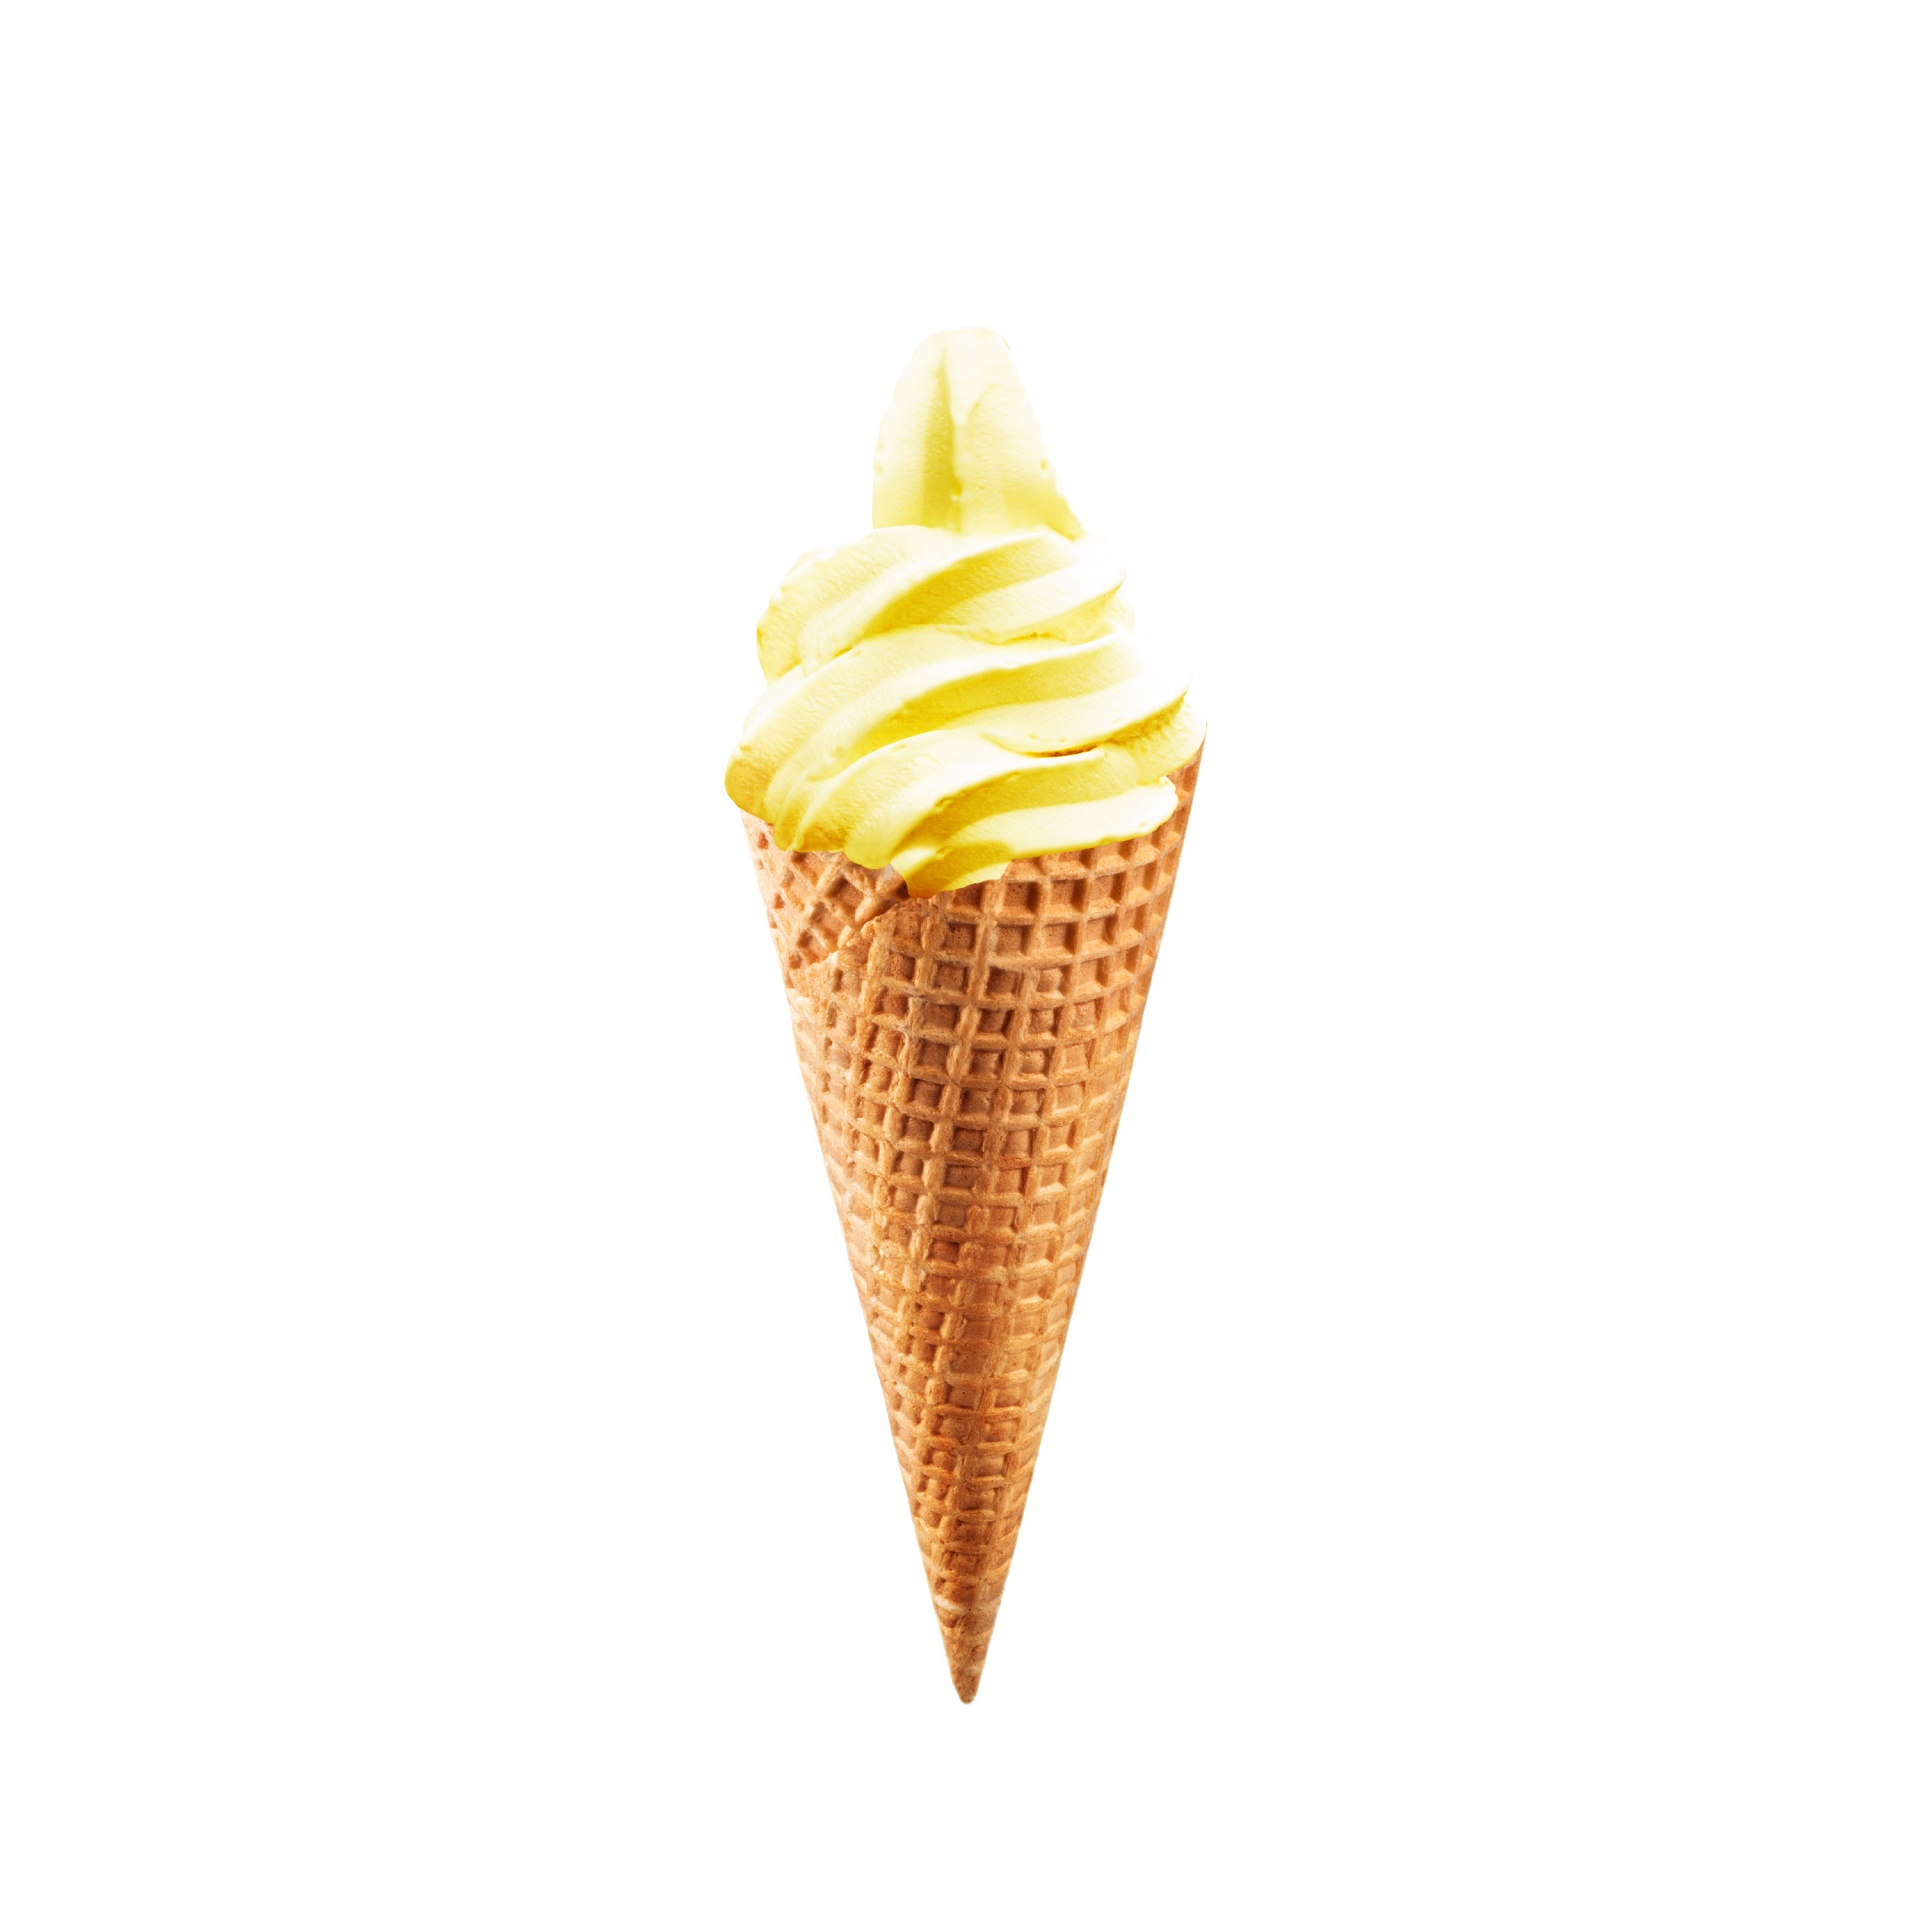 ice cream cone wafer free photo